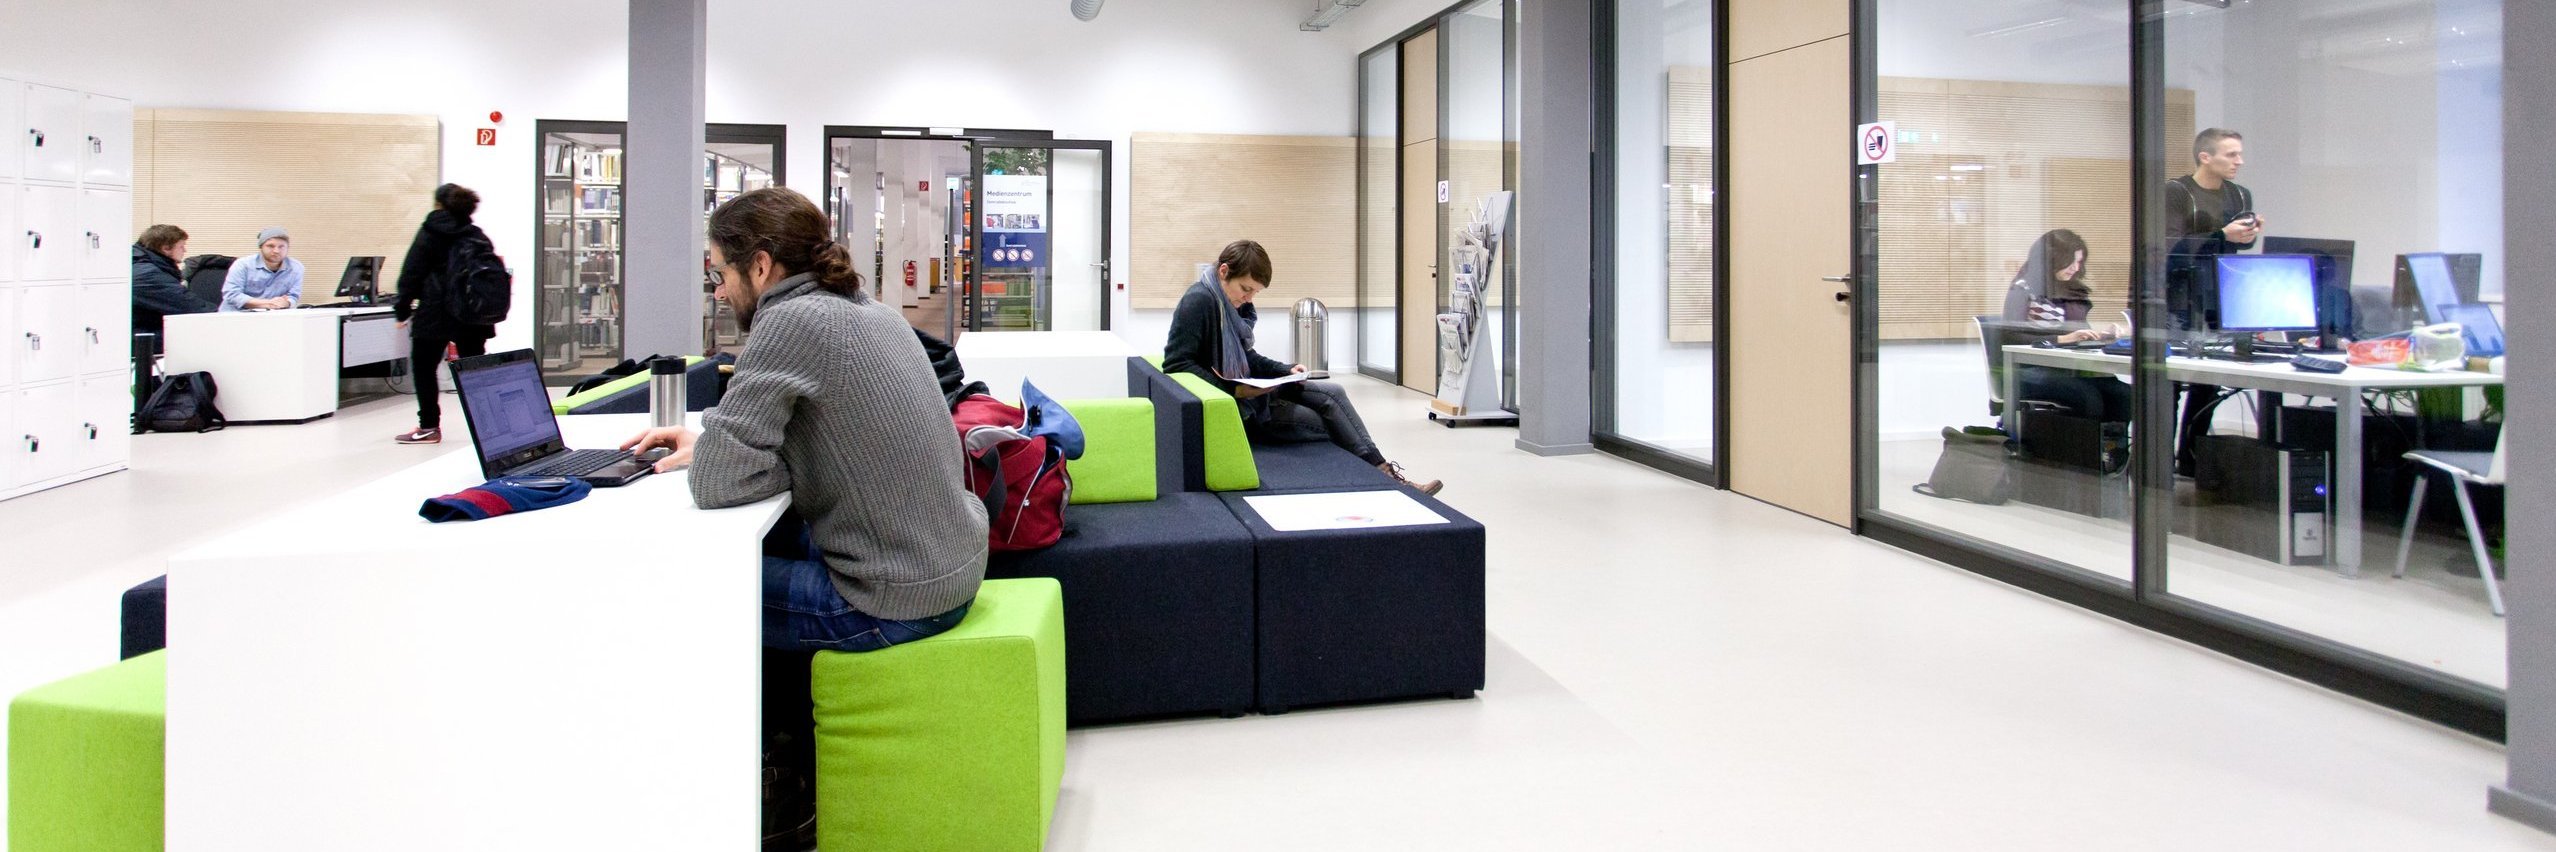 Blick ins Lernzentrum der h_da mit offenen und geschlossenen Lern- und Arbeitsbereichen und direkt angeschlossener Bibliothek